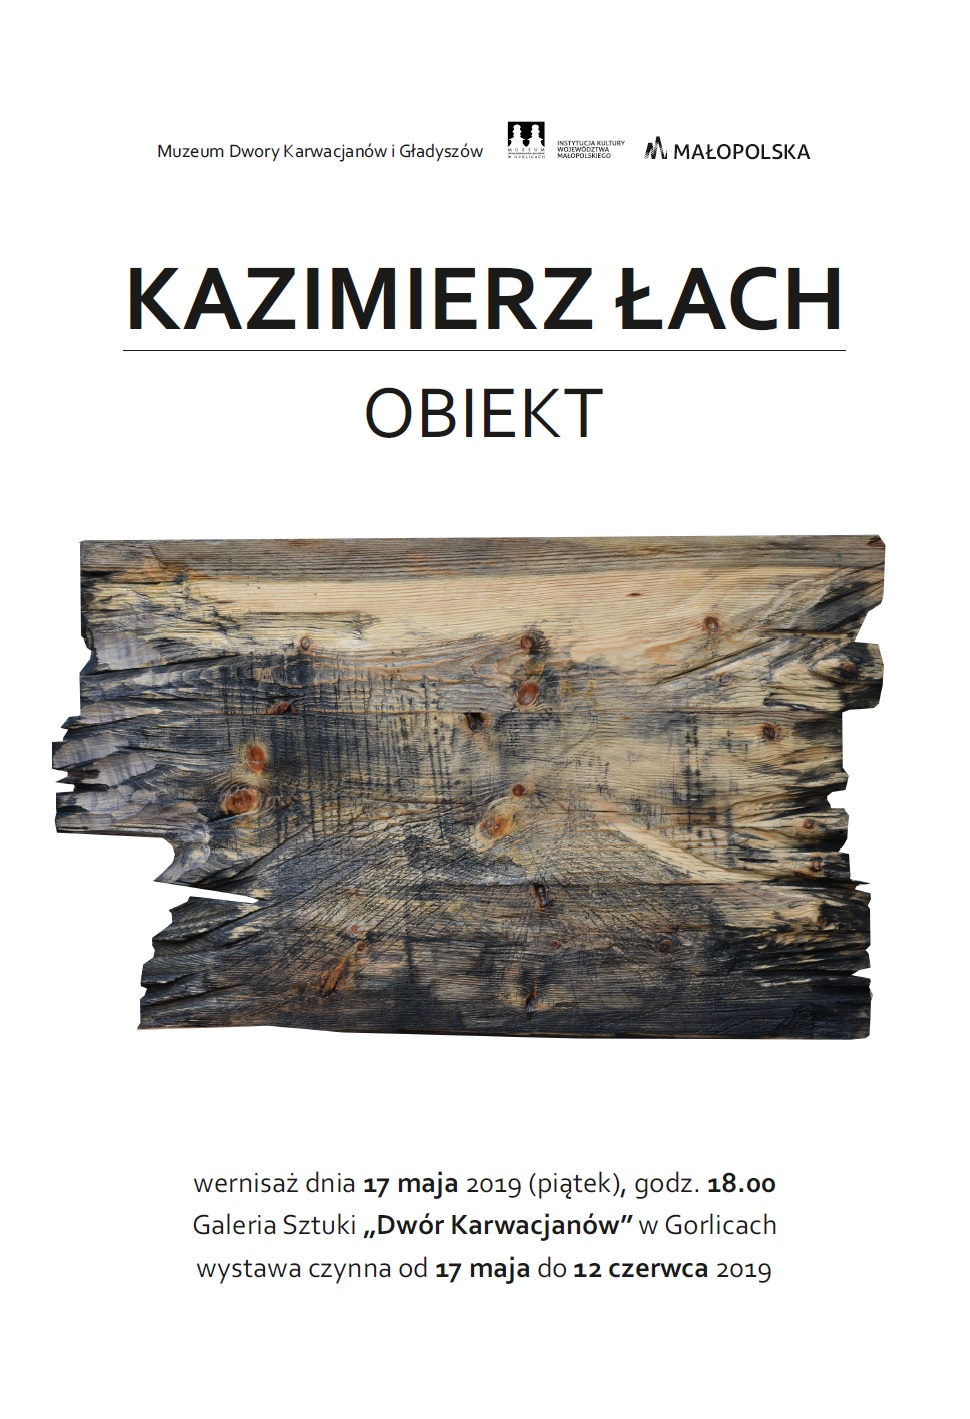 Kazimierz Łach – OBIEKT